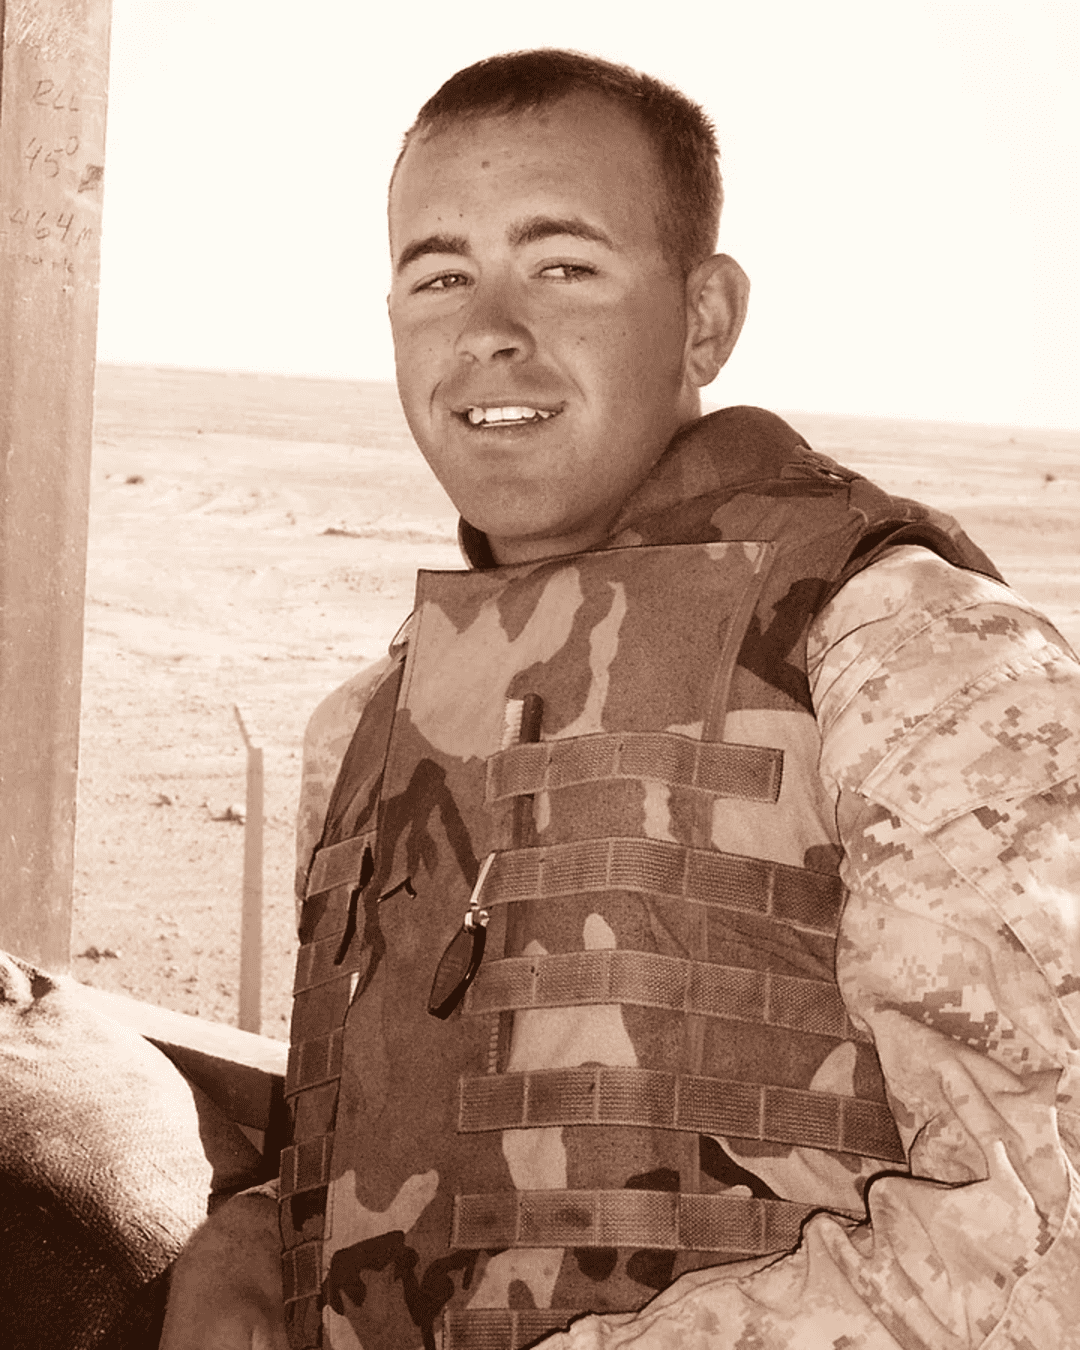 Marine Corps Veteran Turner.